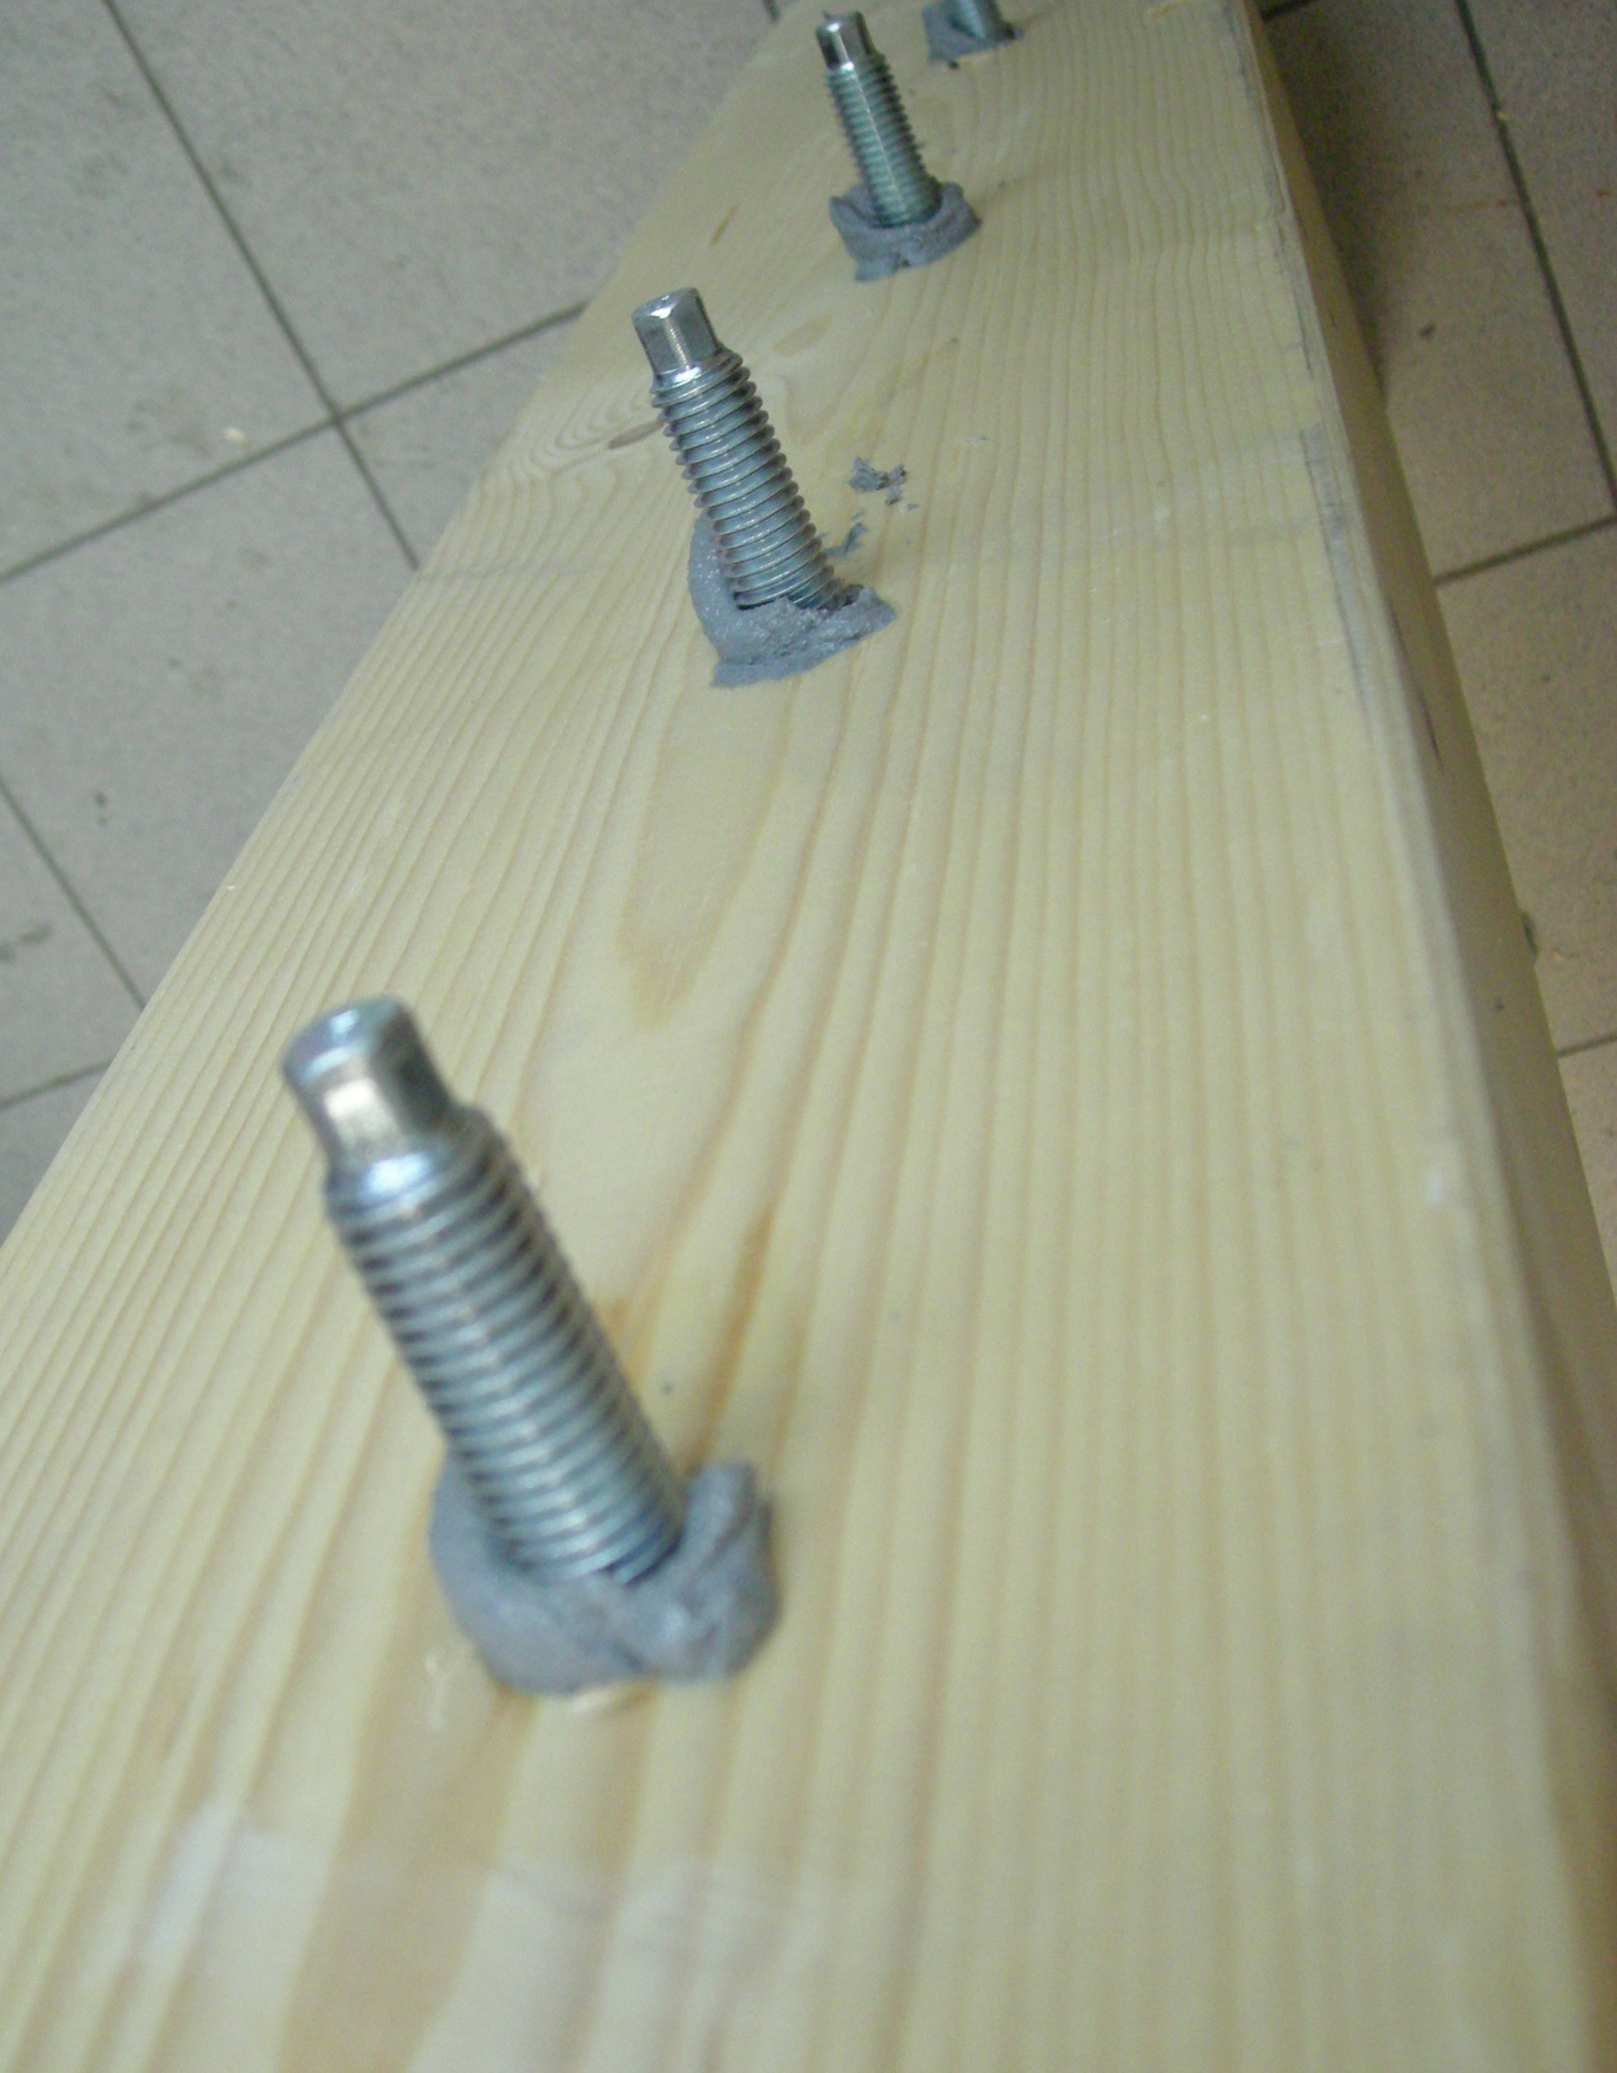 L'utilizzo per il rinforzo di solai in legno col metodo della soletta collaborante prevede l'inserimento di ferri di connessione piegati a "L" infissi tramite resina che trasferiscano lo sforzo di